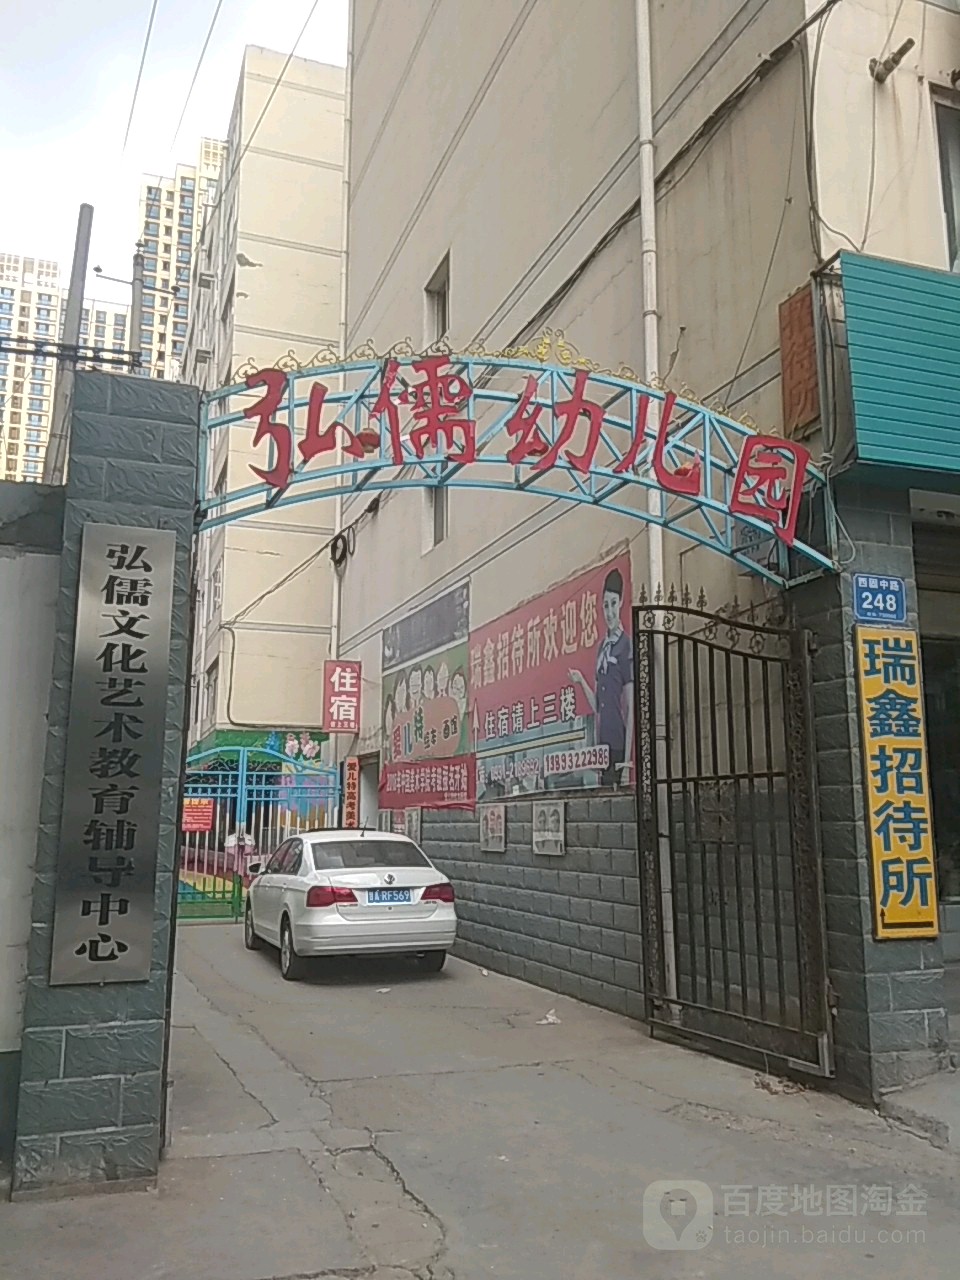 弘儒文化藝術教育輔導中心